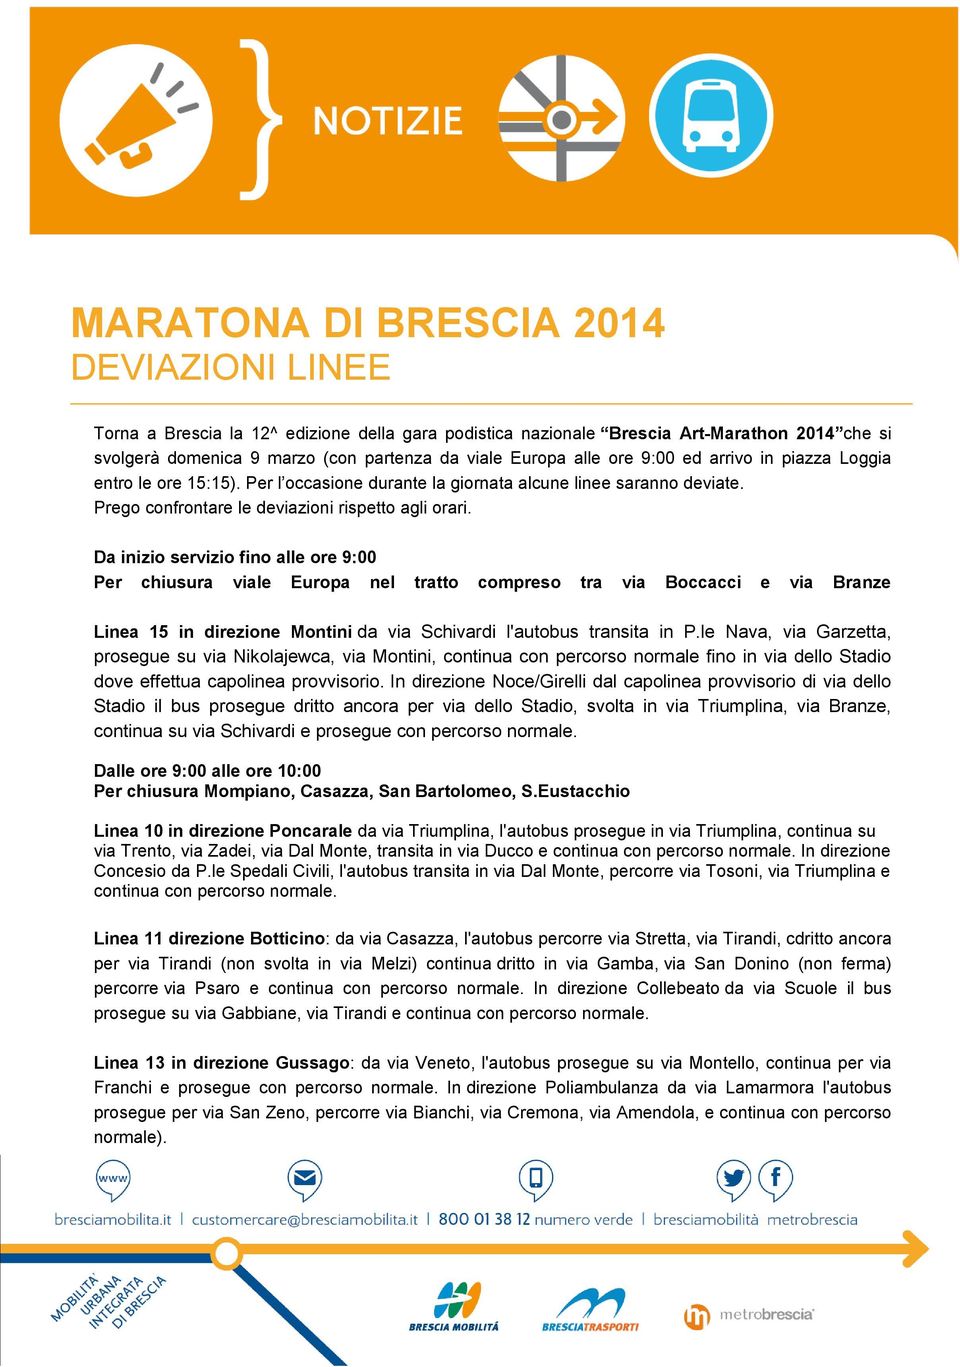 Da inizio servizio fino alle ore 9:00 Per chiusura viale Europa nel tratto compreso tra via Boccacci e via Branze Linea 15 in direzione Montini da via Schivardi l'autobus transita in P.